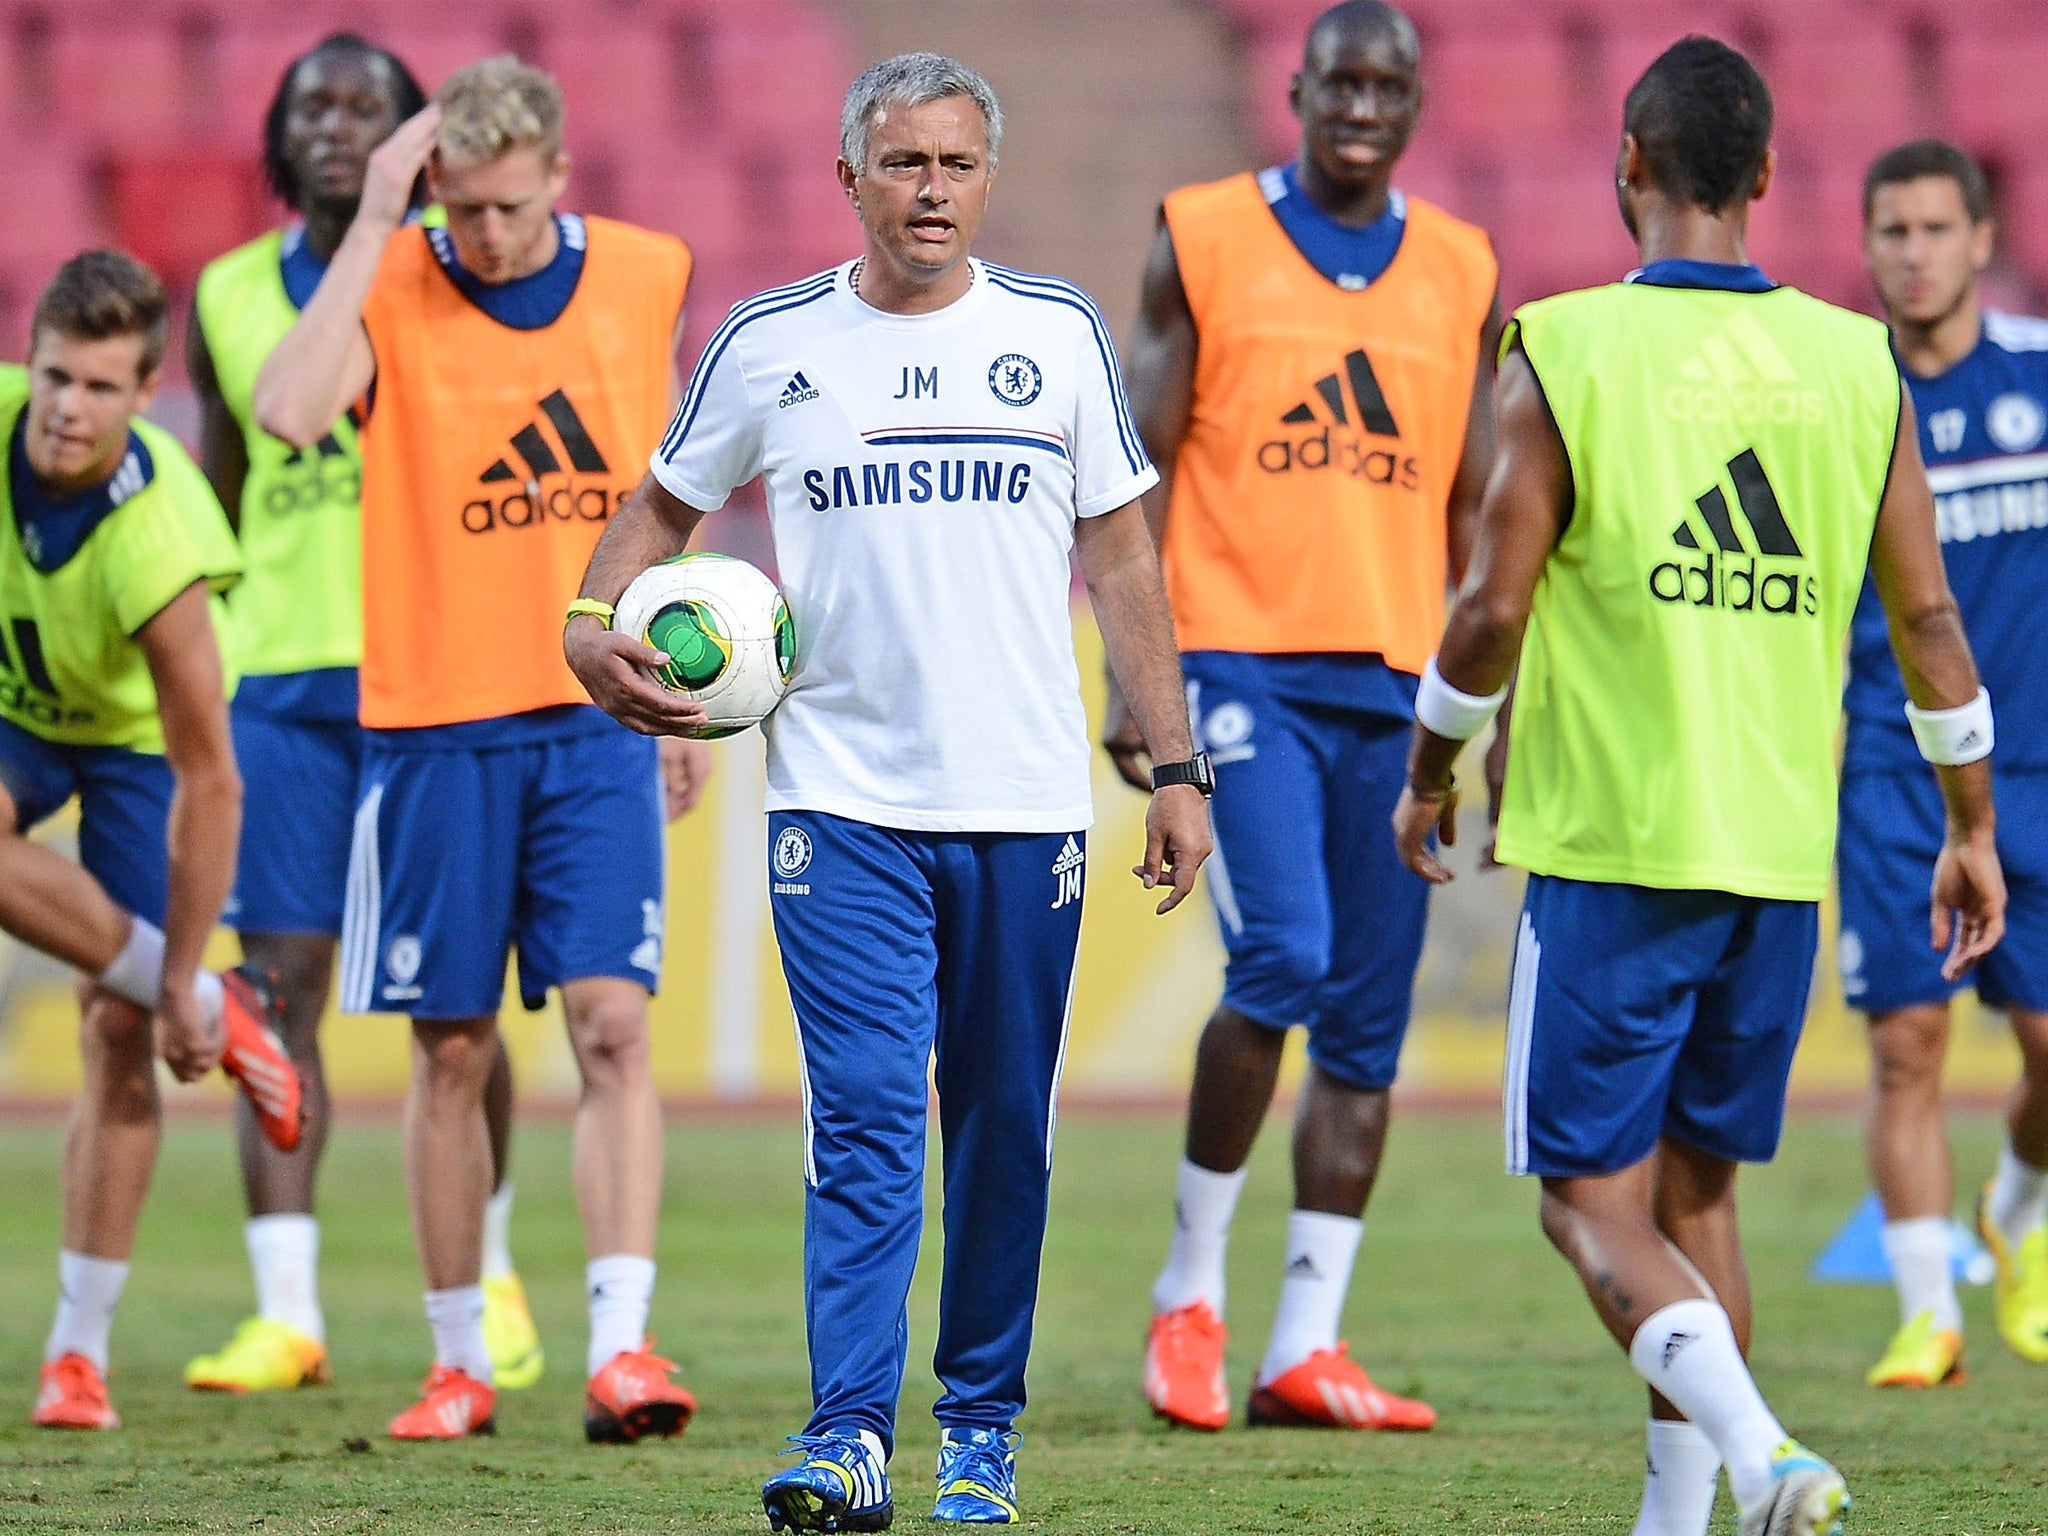 Chelsea manager Jose Mourinho takes a training session at Rajamangala Stadium, Bangkok